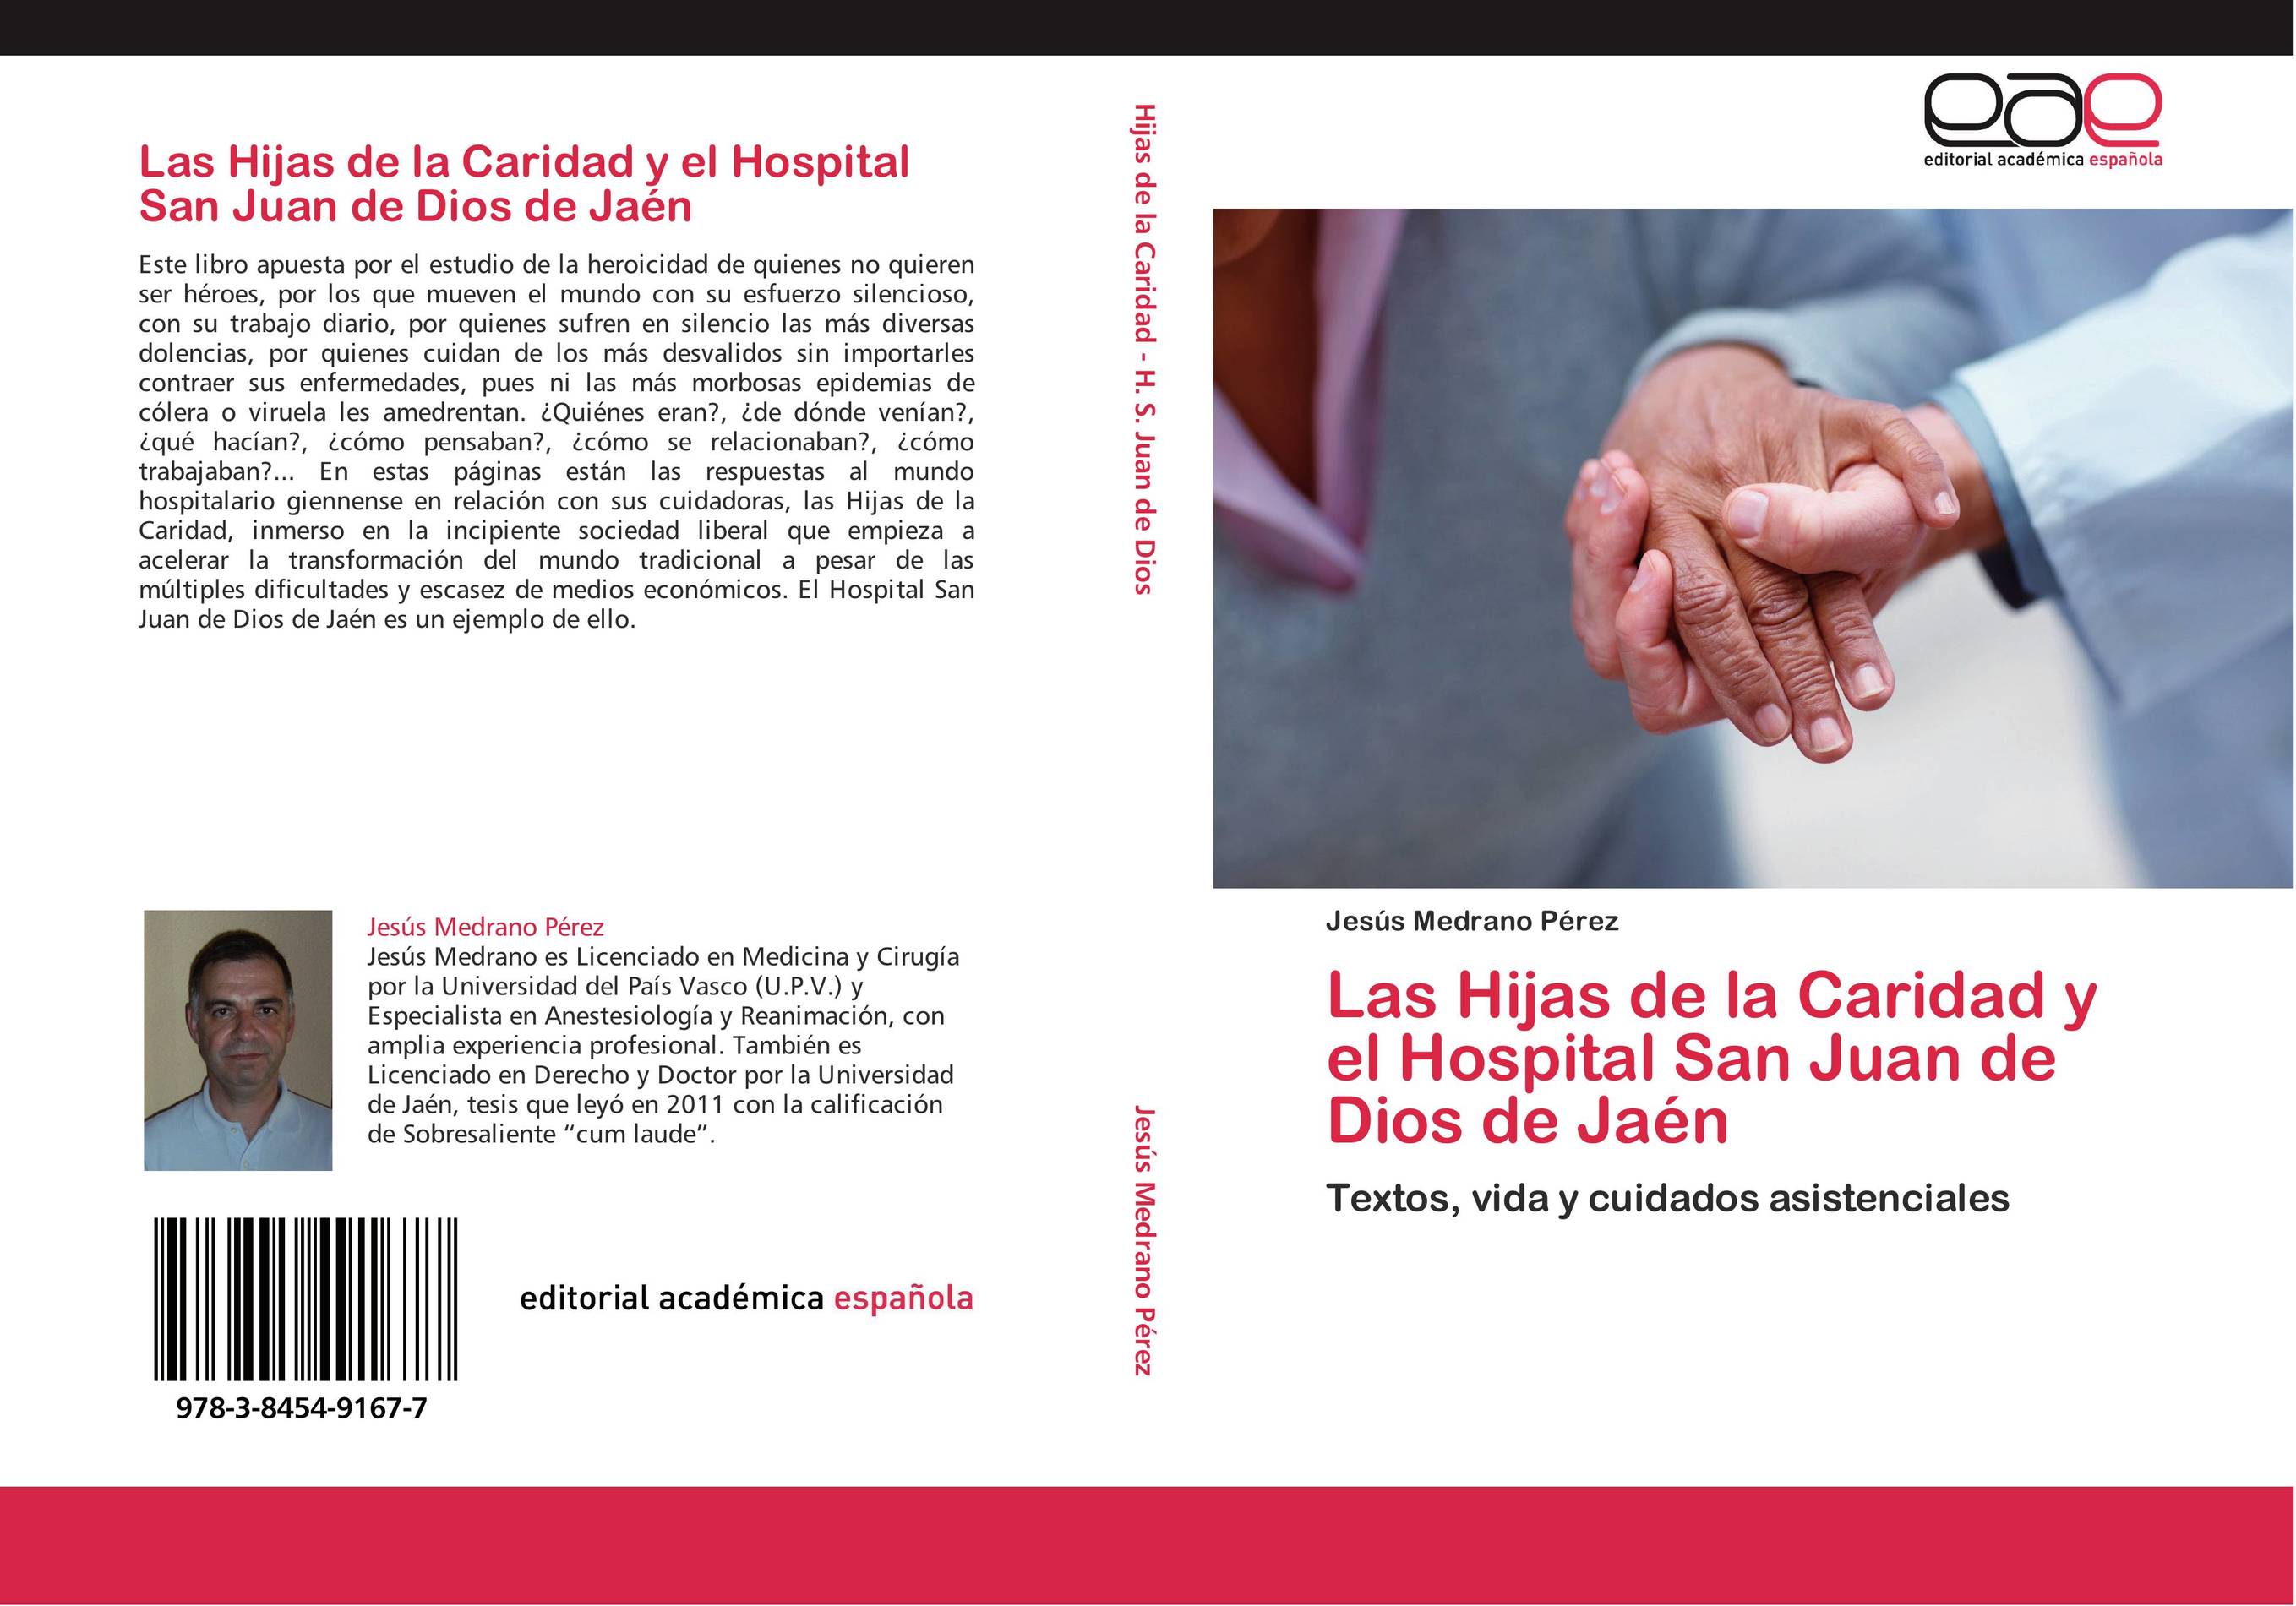 Las Hijas de la Caridad y el Hospital San Juan de Dios de Jaén